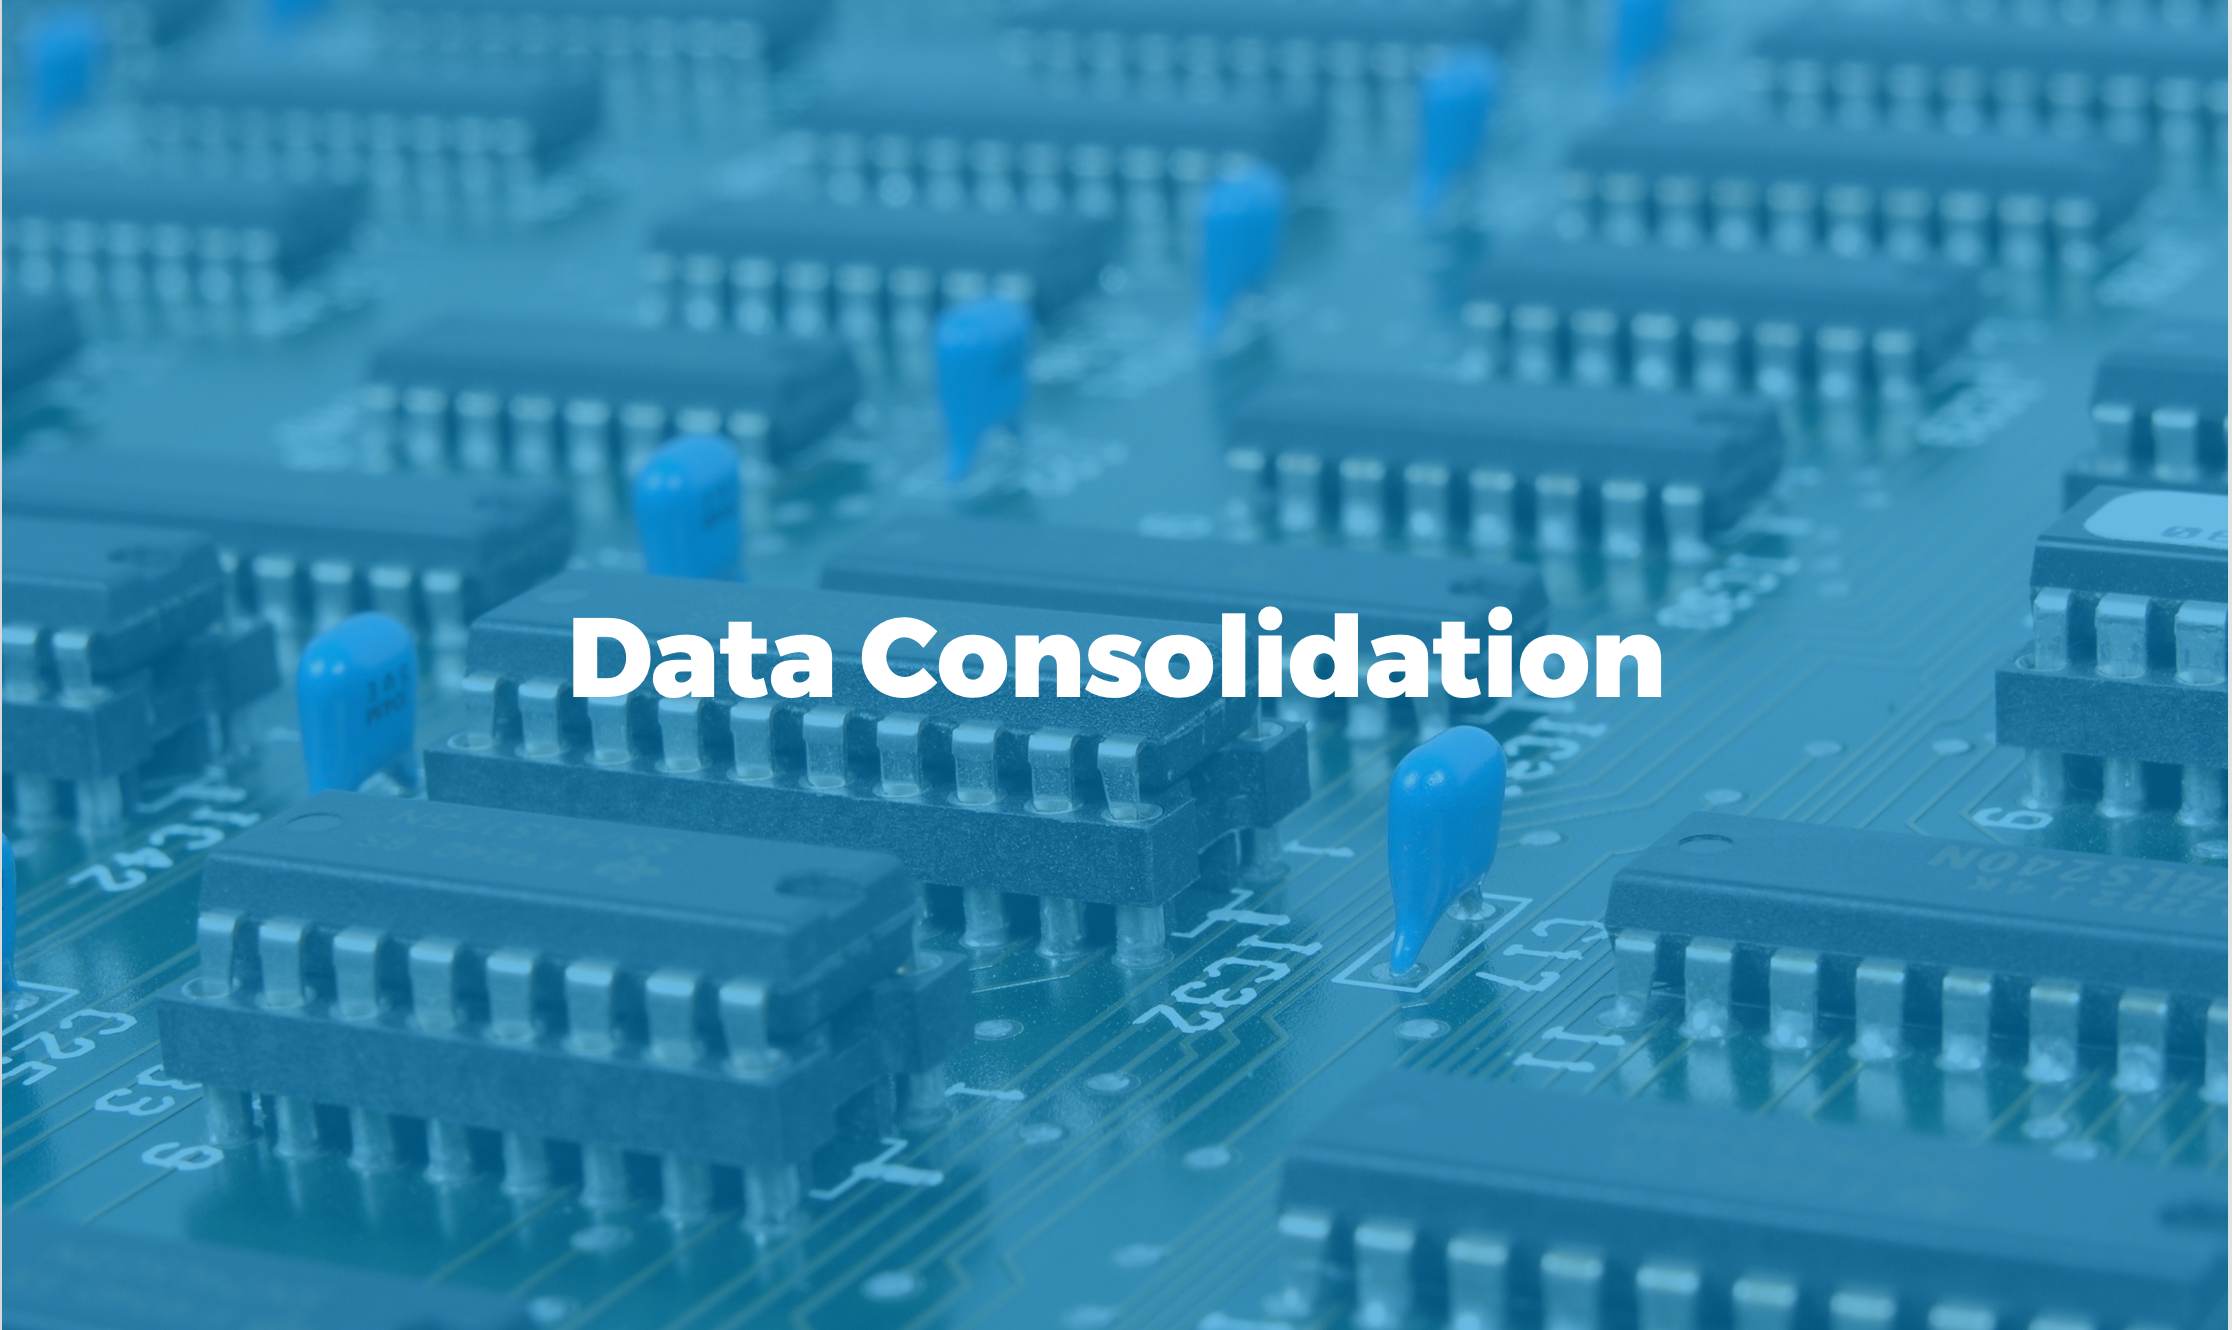 Bismart Data Consolidation